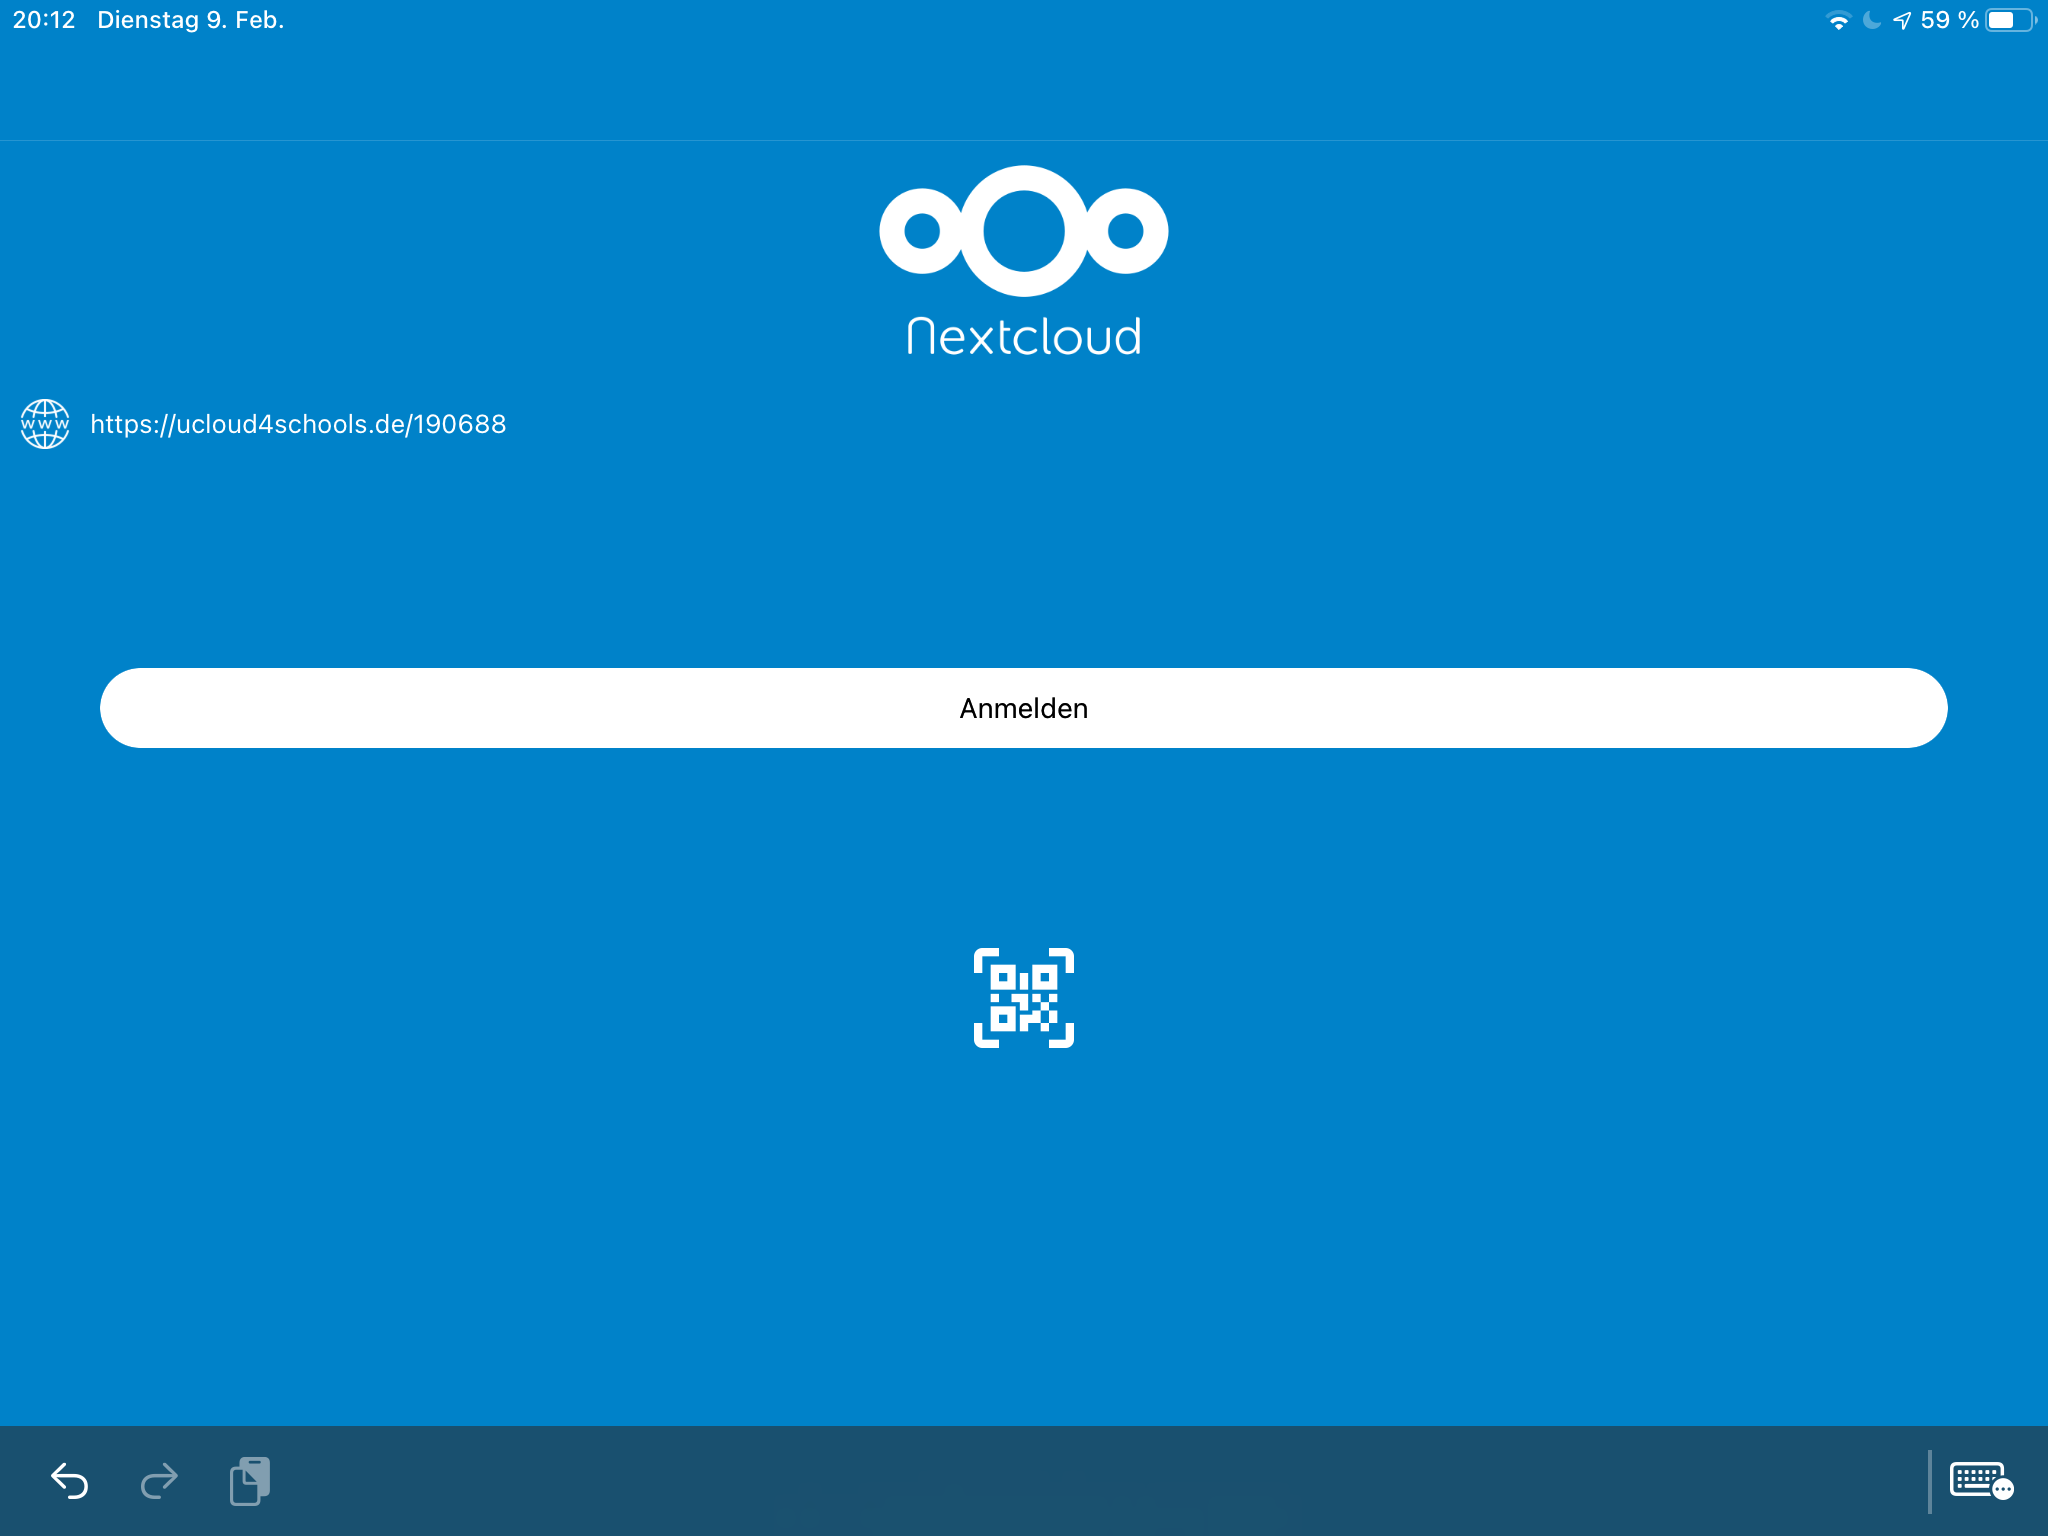 ucloud4schools - Anmeldung App - NextCloud - Schritt 1 Startbildschirm Servereingabe